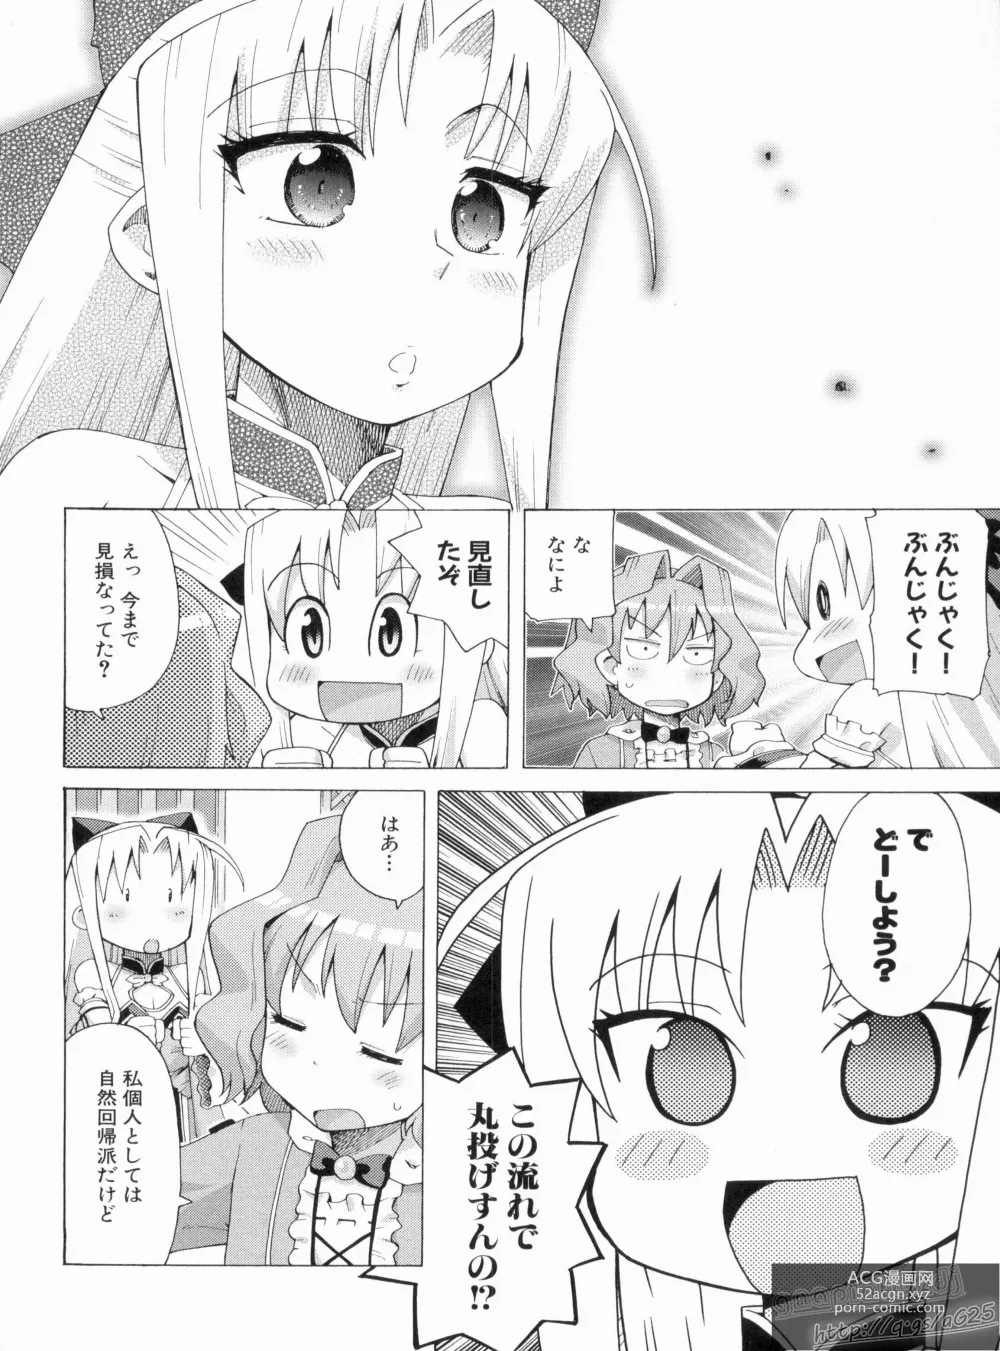 Page 128 of manga Shin Koihime Musou Gaishi Saiten VOL.1